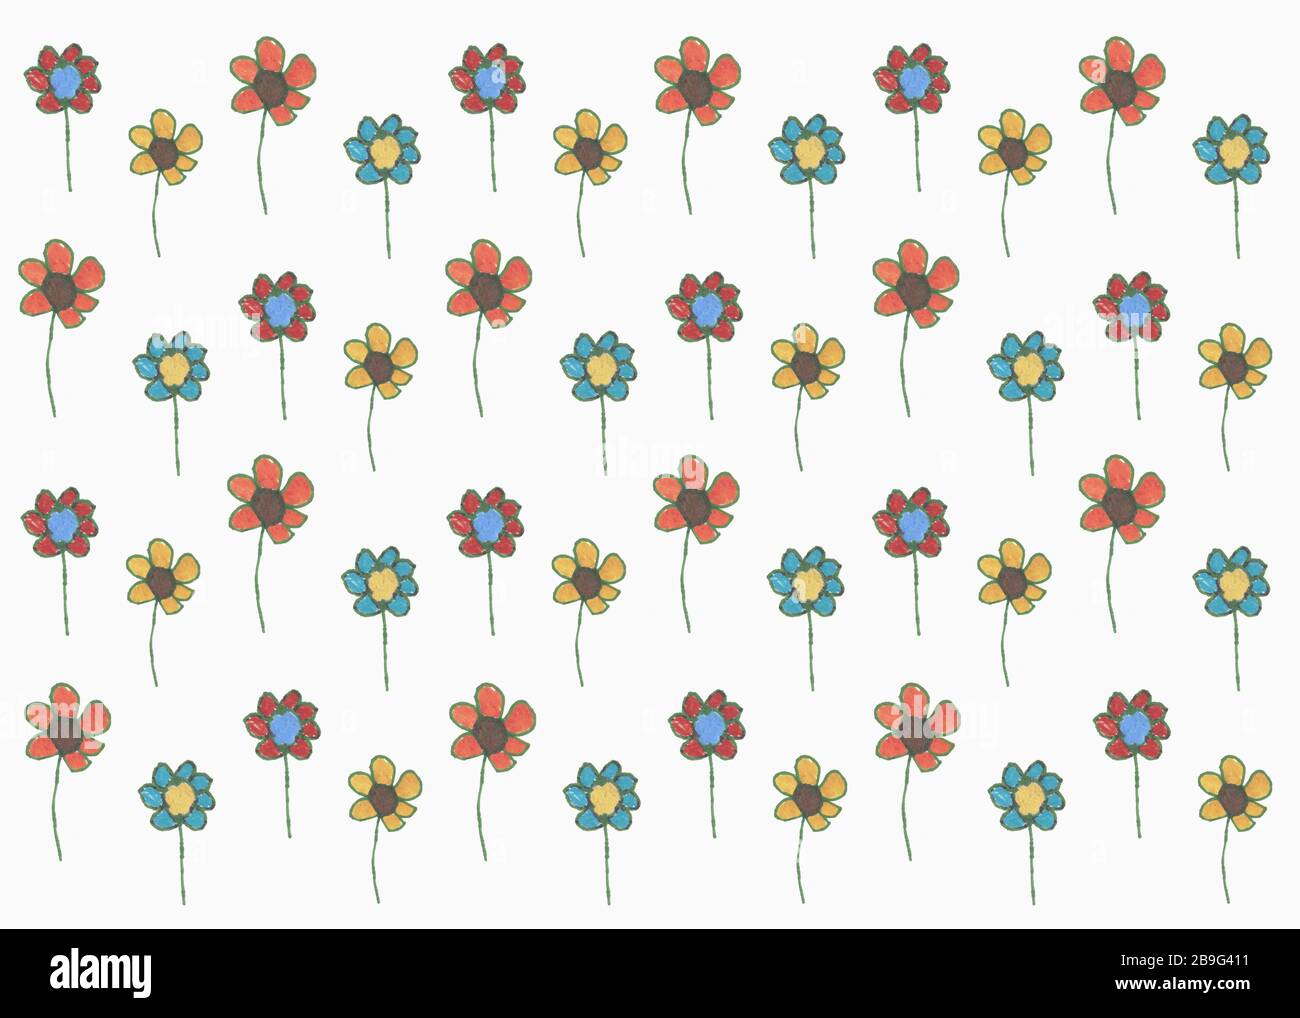 Dessin de fleurs multicolores sur fond blanc Banque D'Images